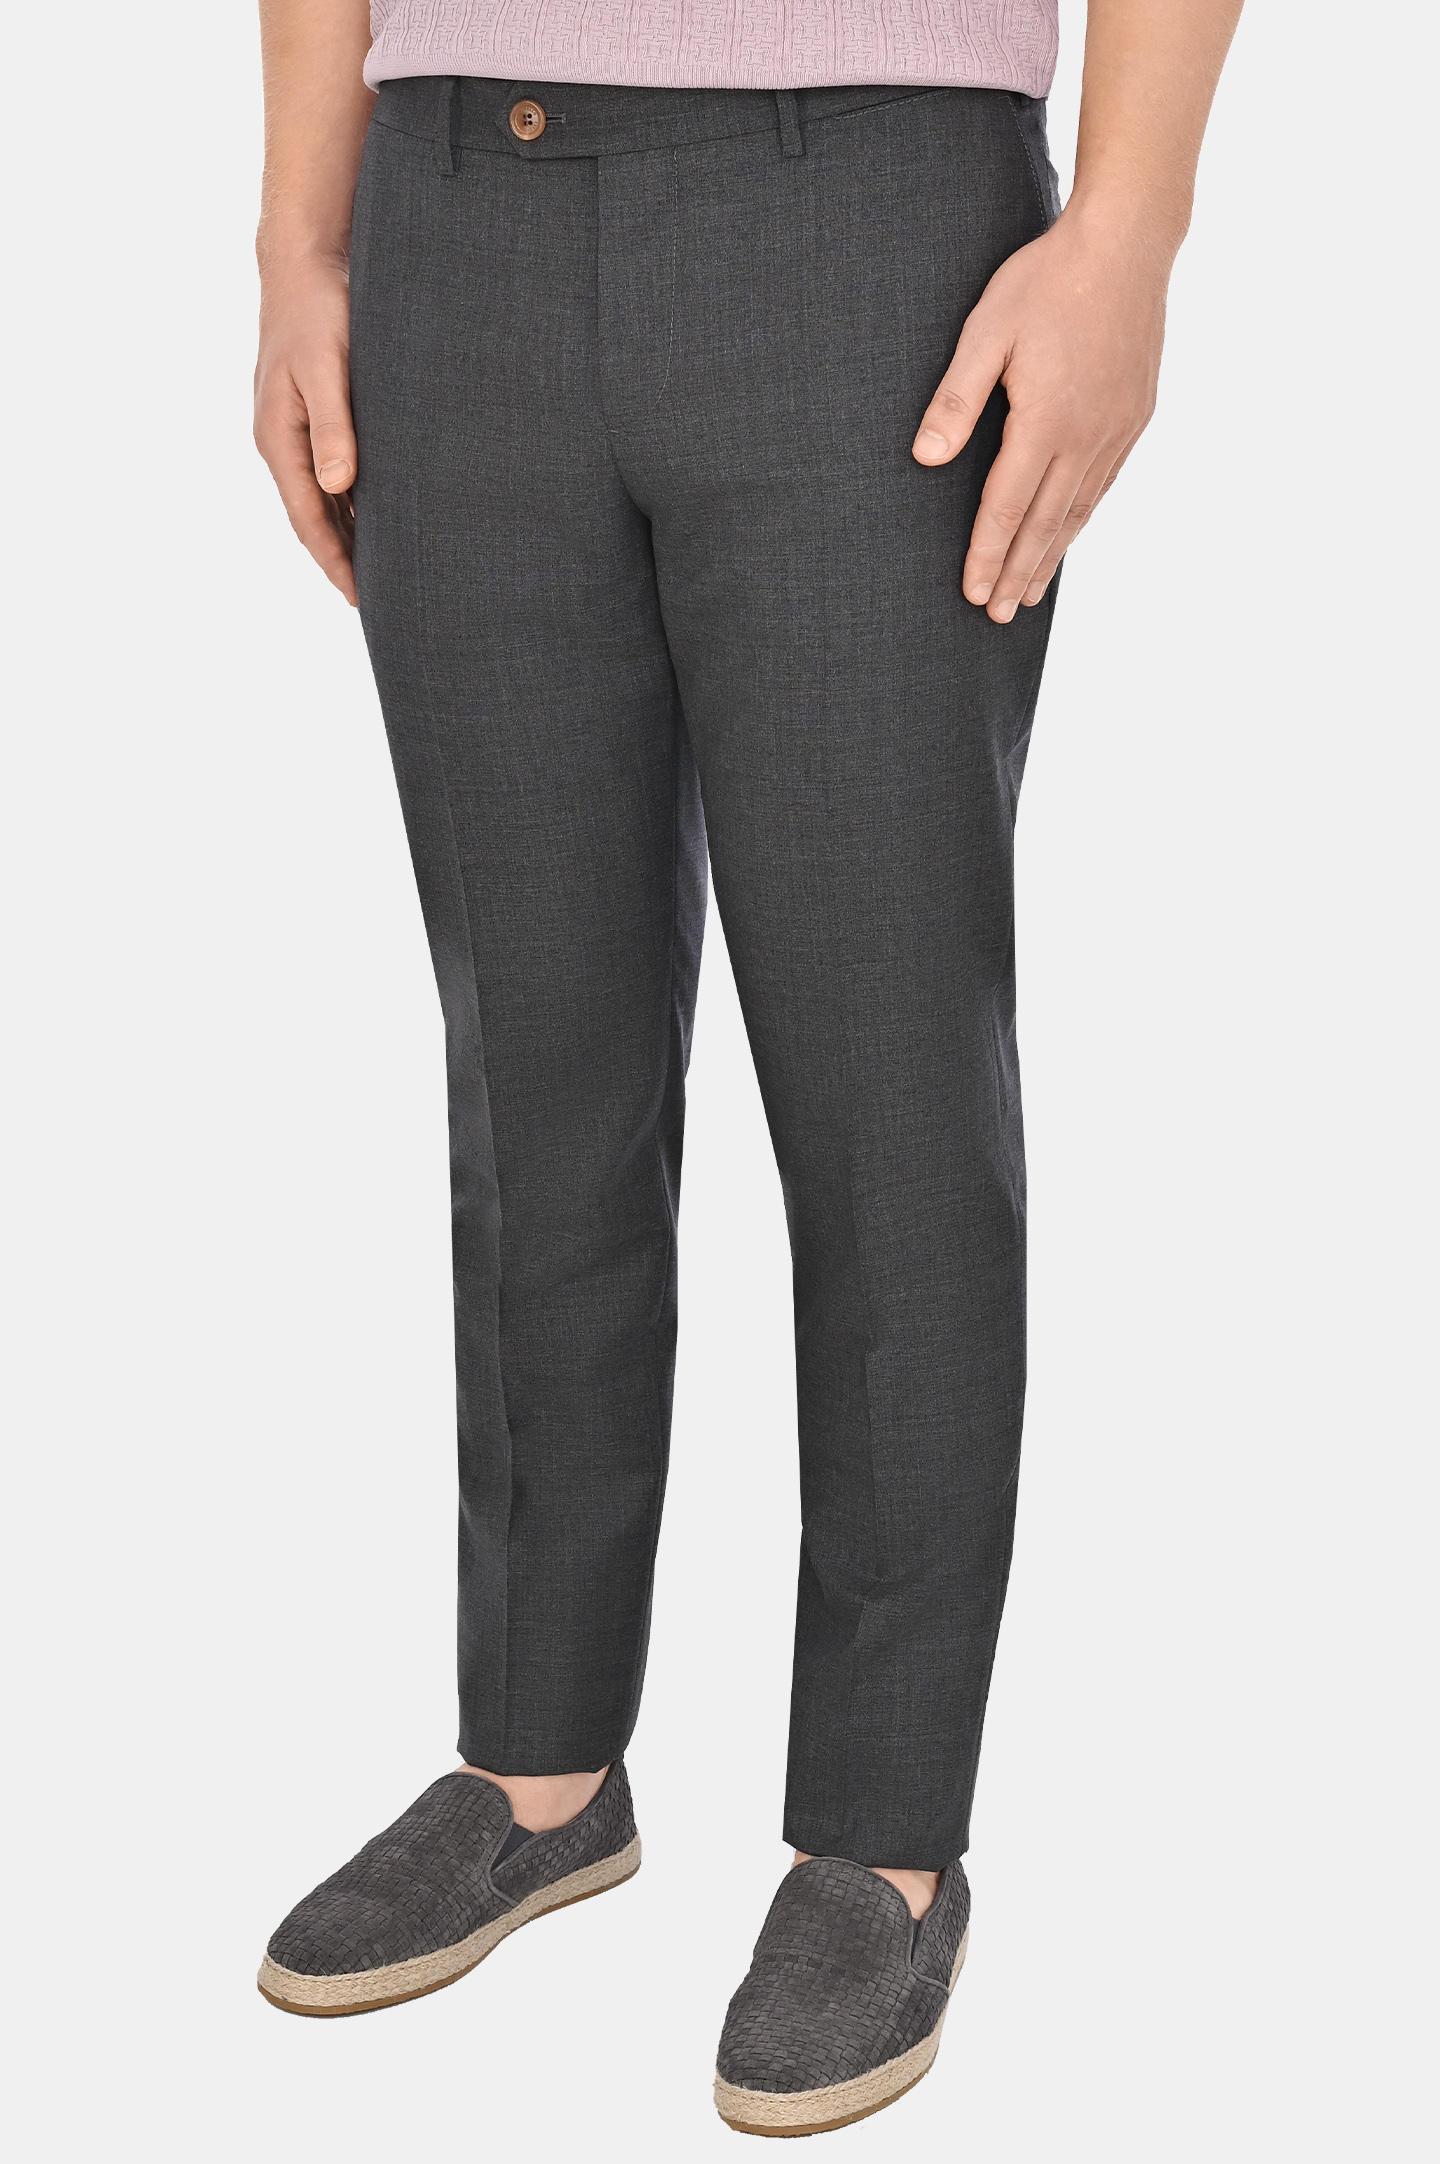 Классические шерстяные брюки BRUNELLO  CUCINELLI MB407I1770, цвет: Темно-серый, Мужской